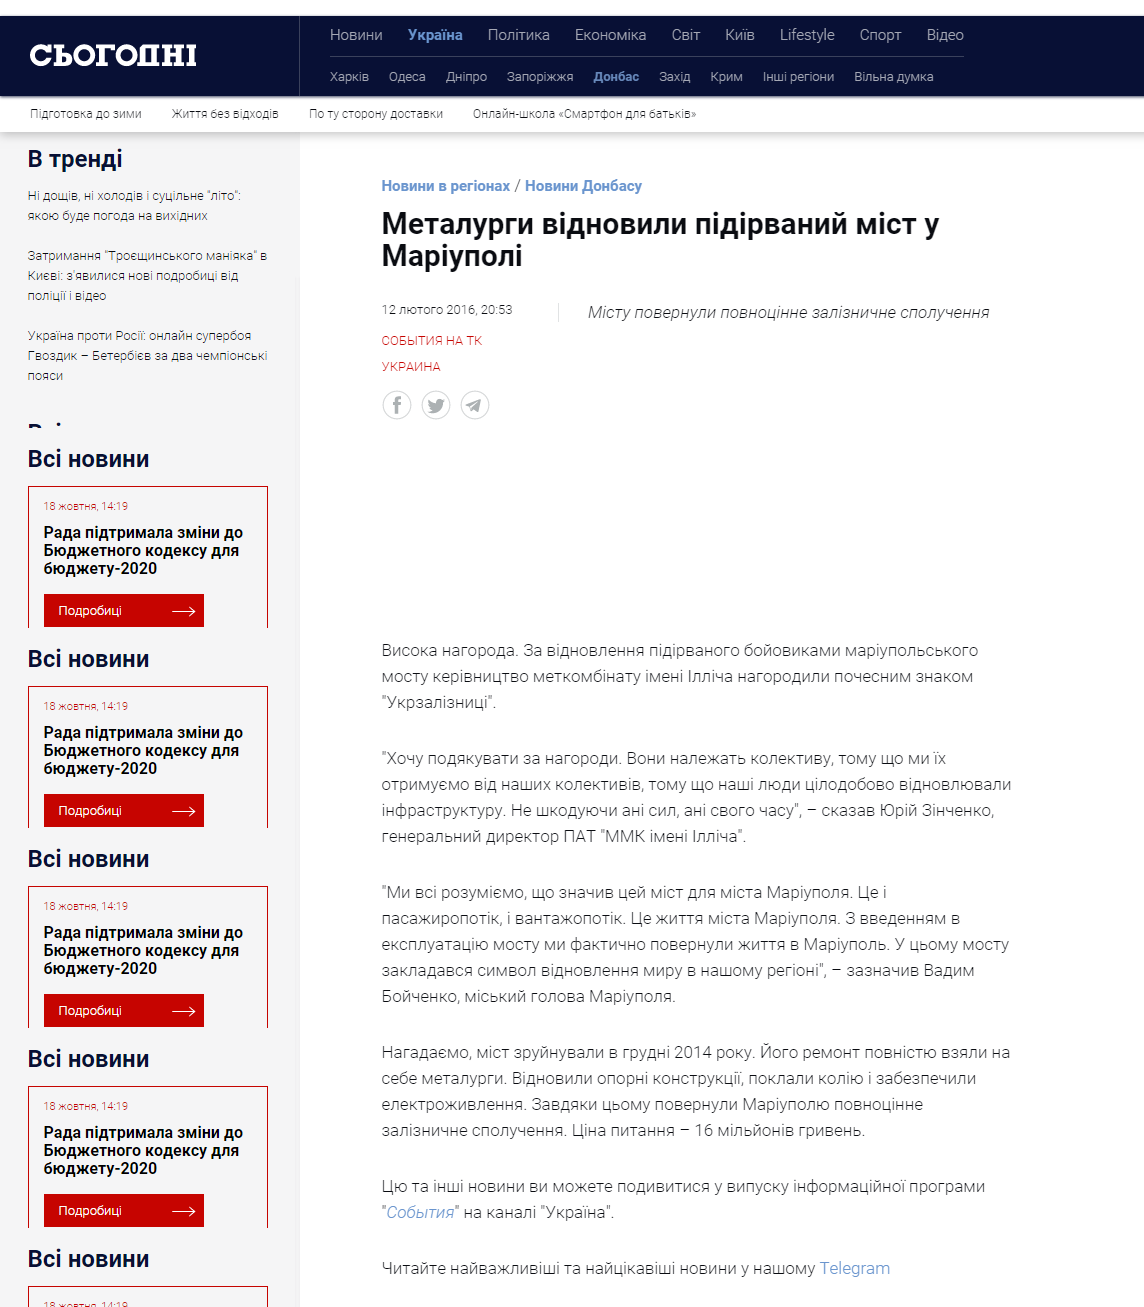 https://ukr.segodnya.ua/regions/donetsk/metallurgi-vosstanovili-vzorvannyy-most-v-mariupole--691275.html